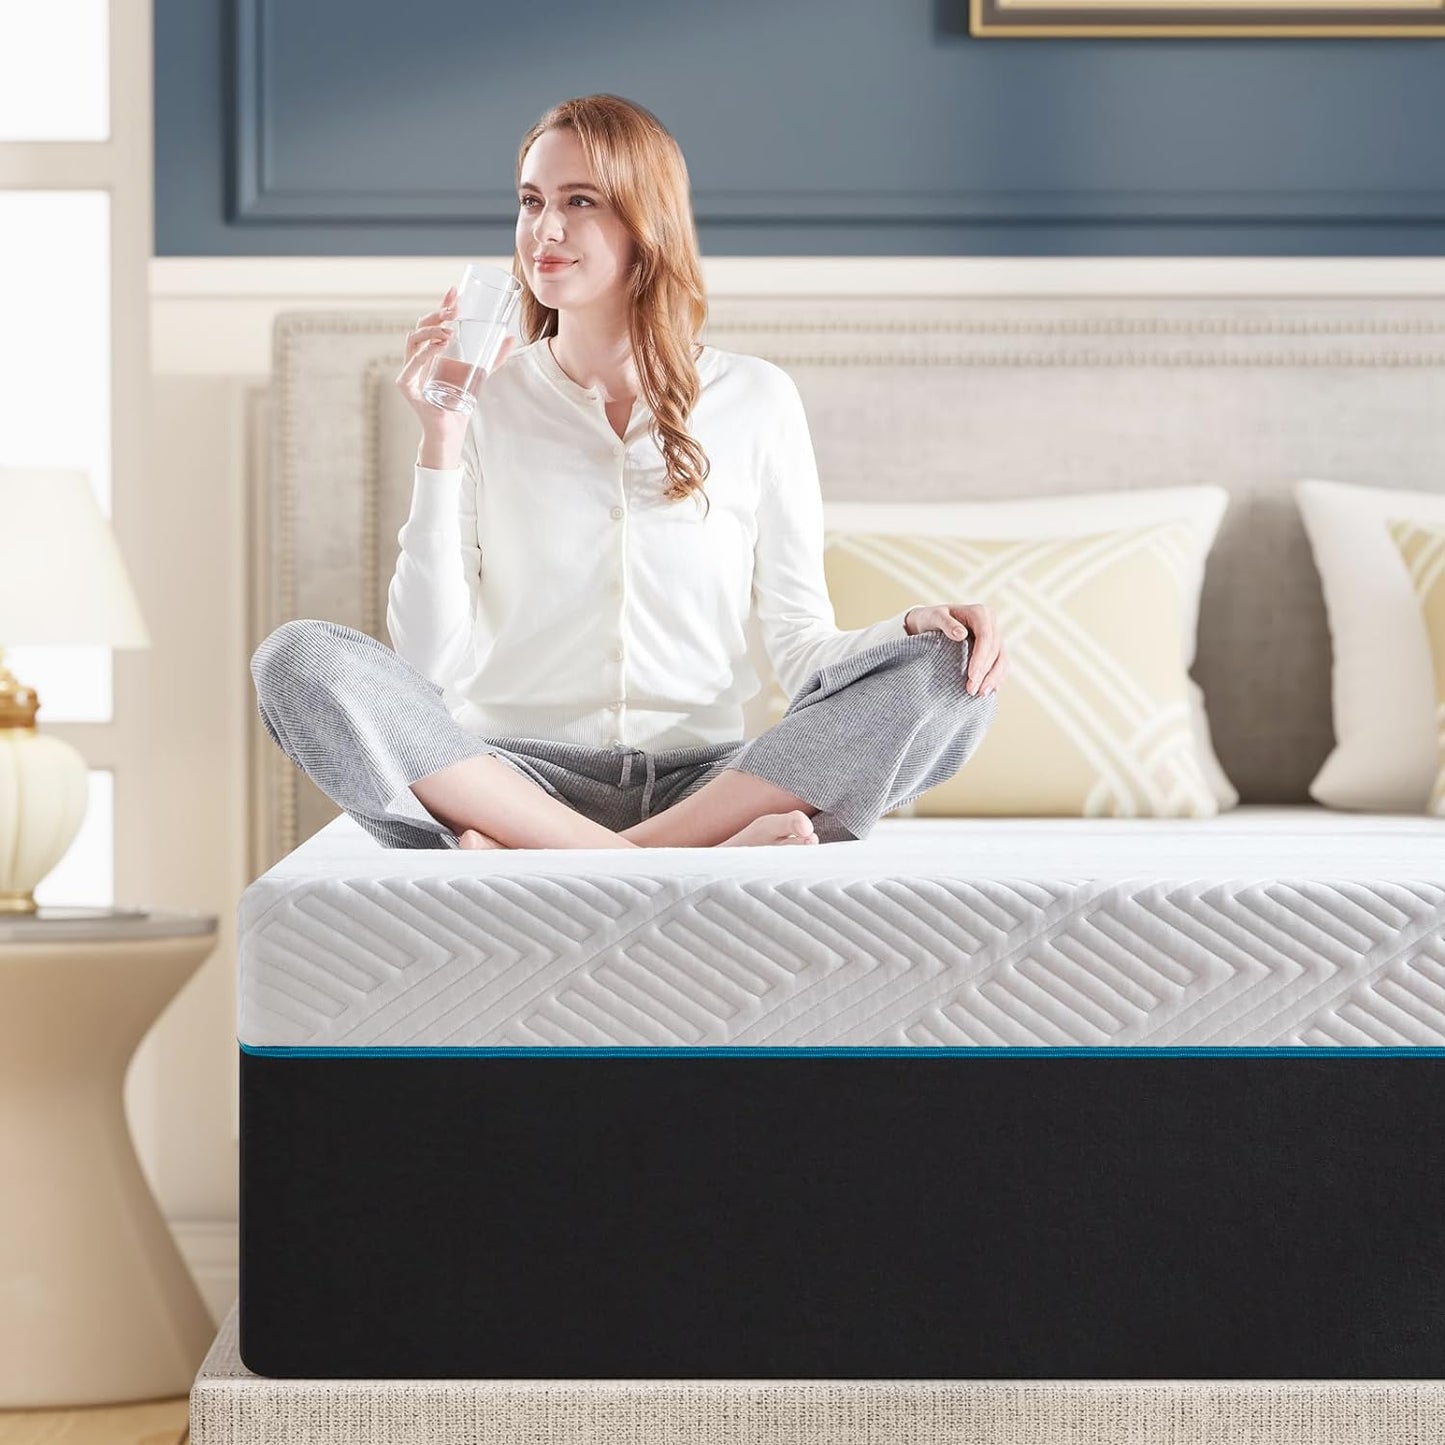 Queen Mattress,10-Inch Queen Size Foam Mattress in Box,Edges Support for Sleep Supportive,60" X 80" X 10"